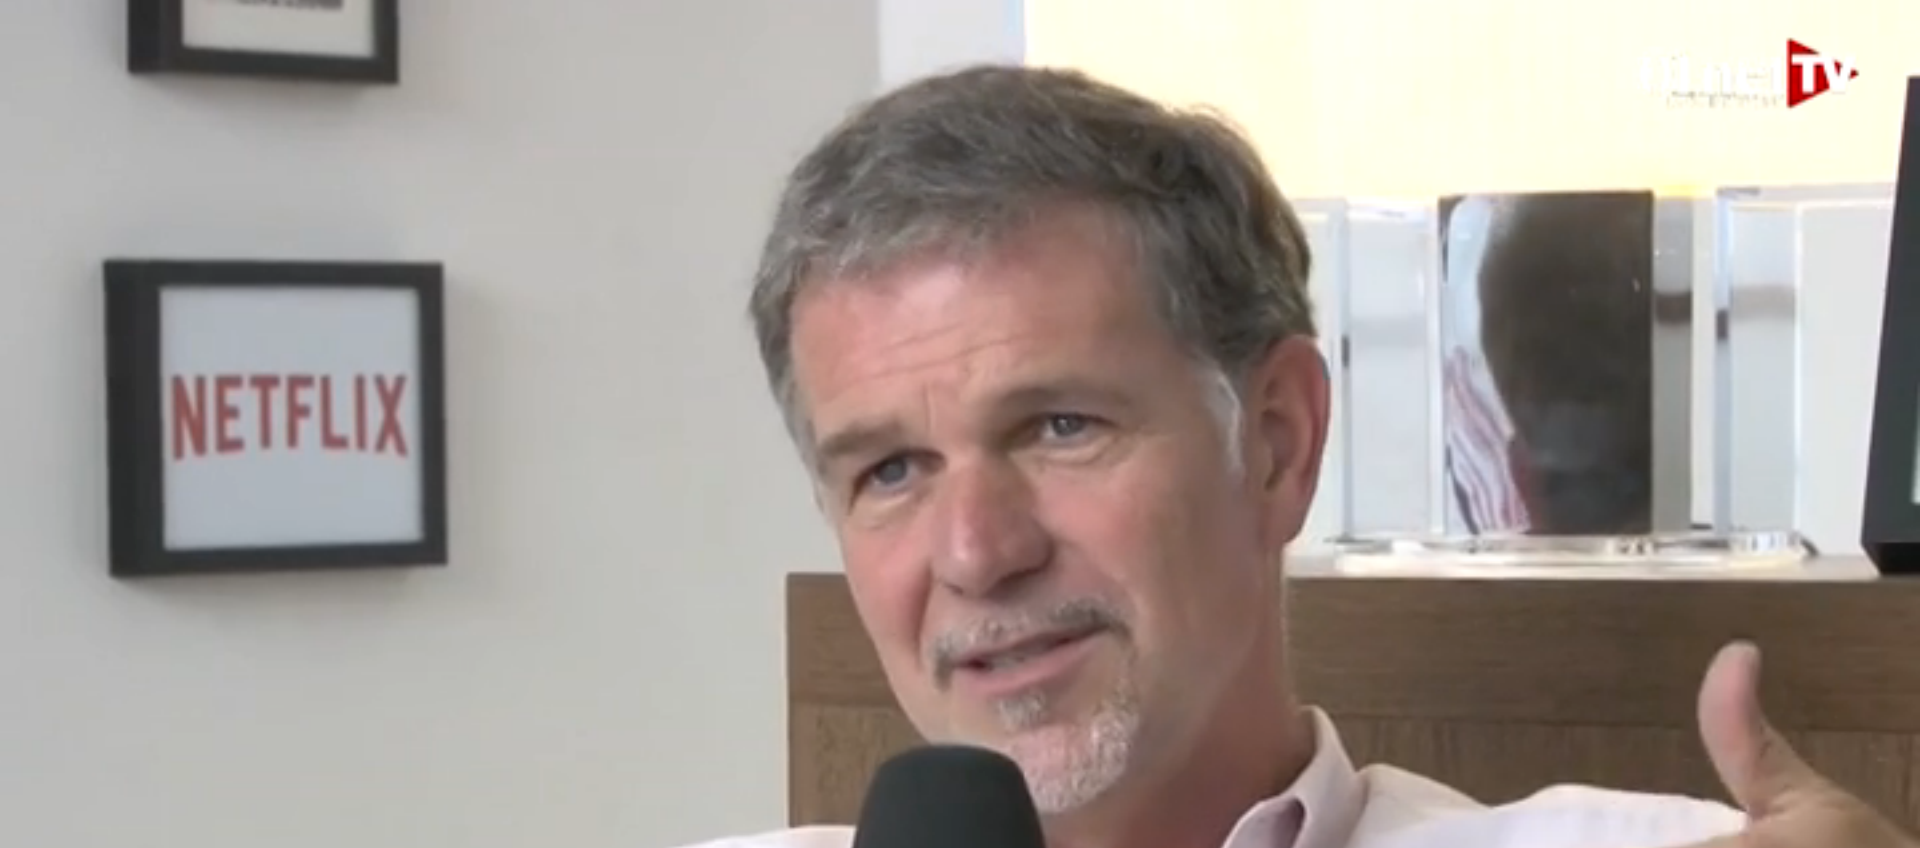 Interview de Reed Hastings à 01net.tv : l’implantation de Netflix en France est réussie